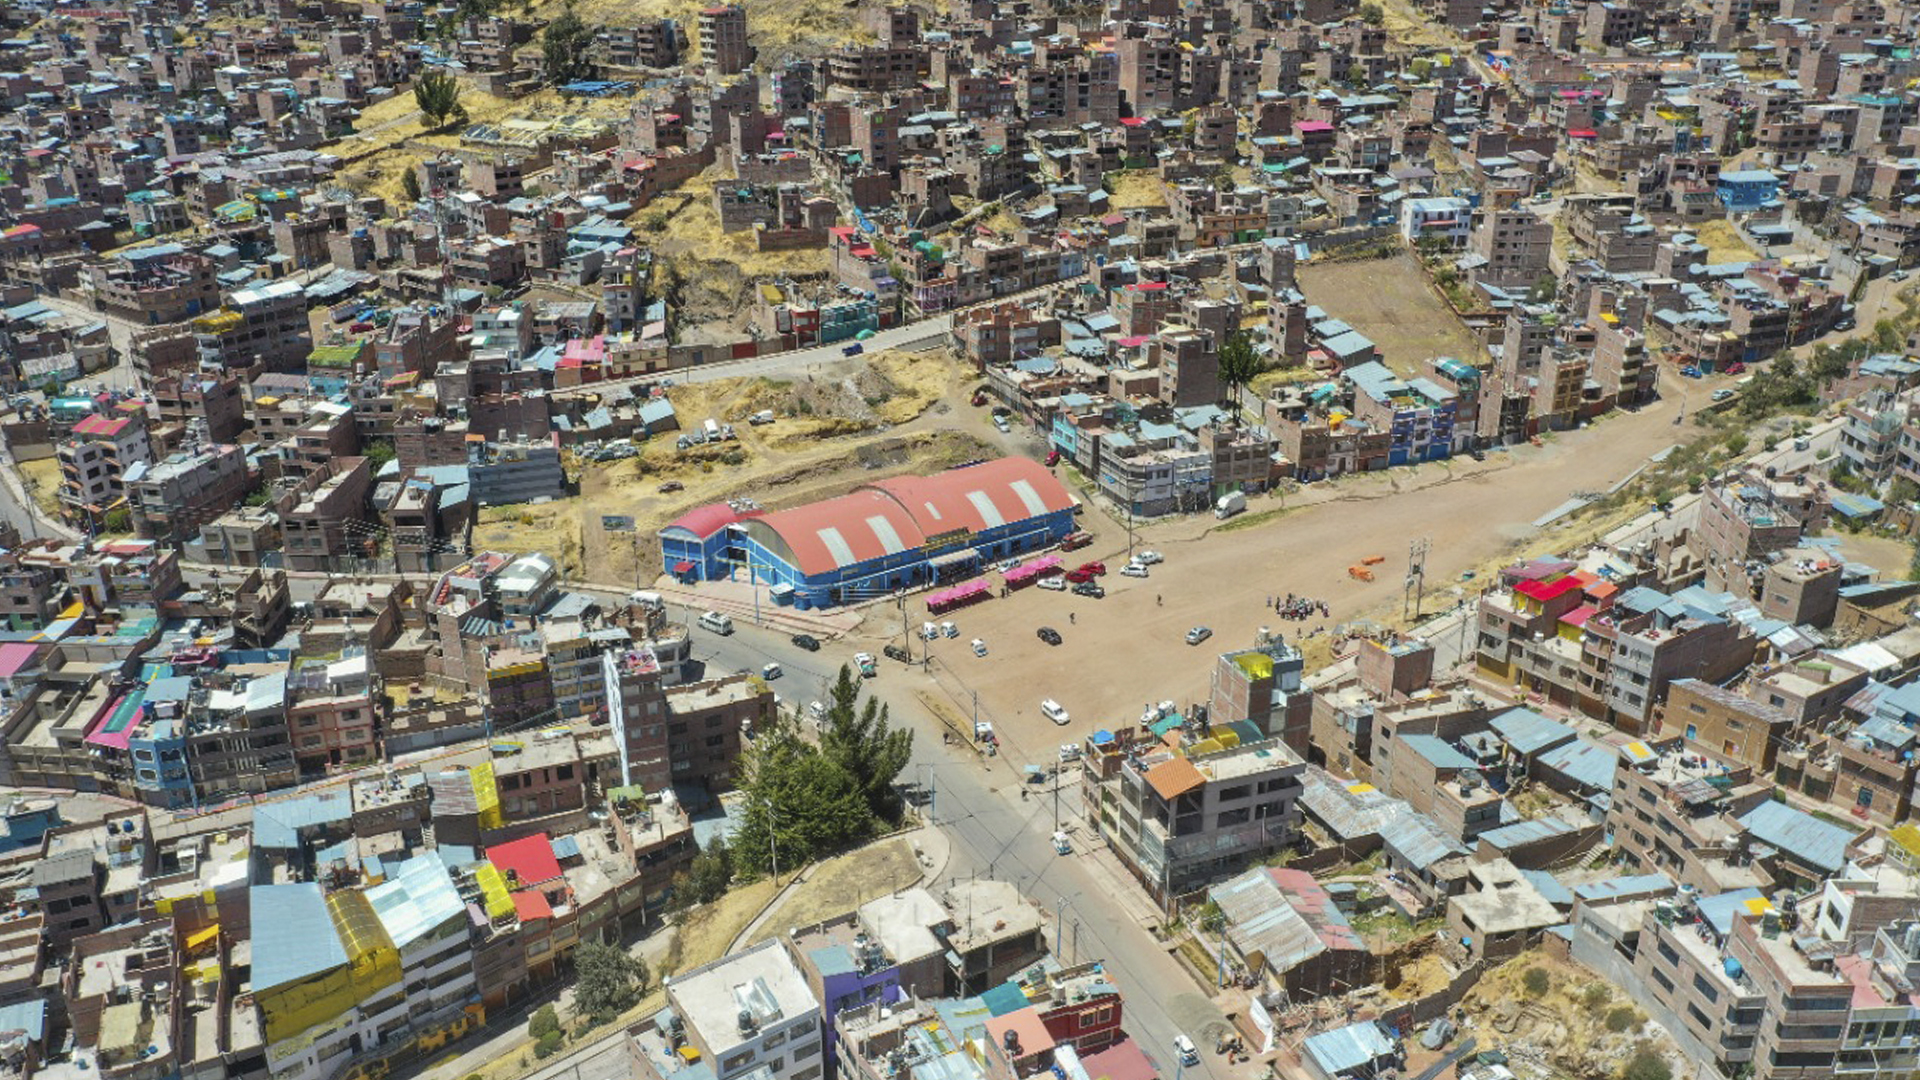 Plan de desarrollo urbano de Puno